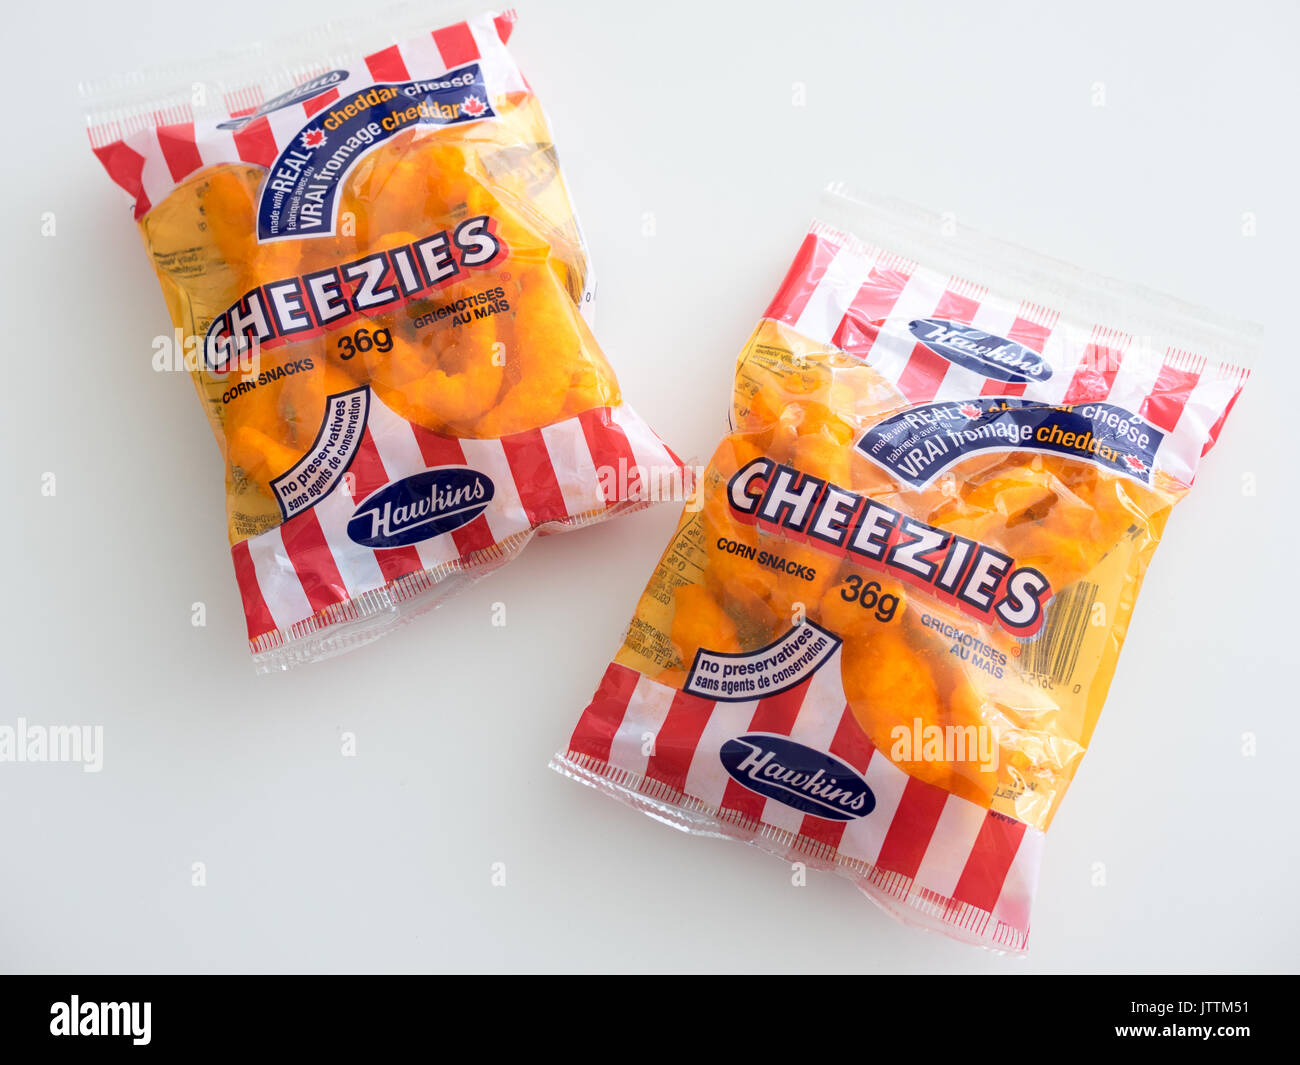 Sacchetti di Cheezies, una marca di formaggio bignè snack food realizzati e venduti in Canada da W.T. Hawkins Ltd. Foto Stock